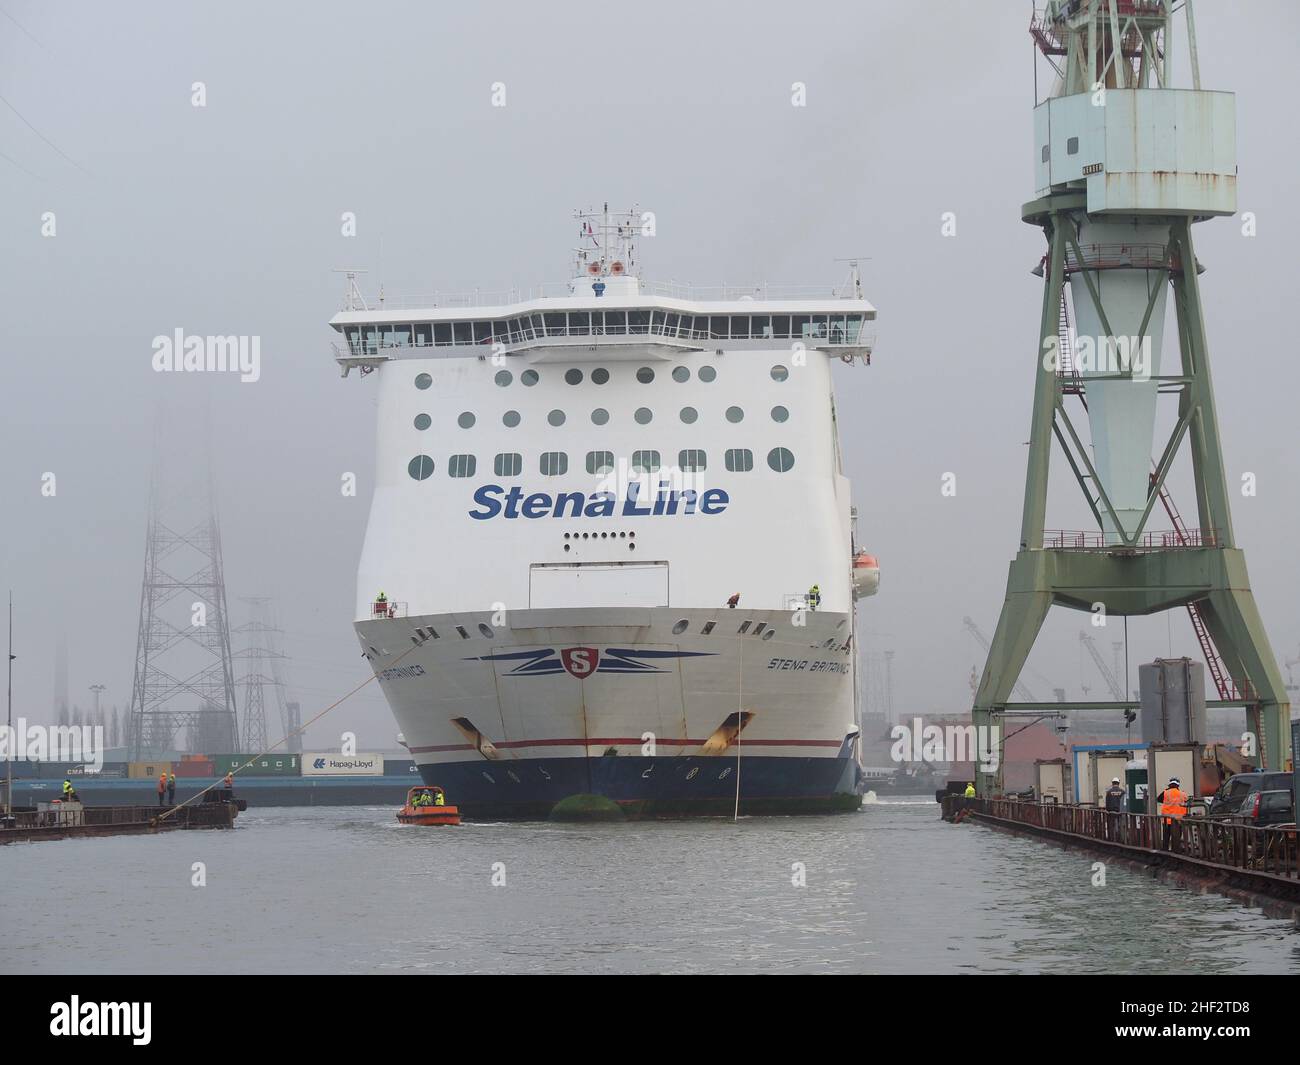 El ferry de la línea de Stena Stena Brittanica se está maniobrando en un muelle seco en el puerto de Amberes, Bélgica. El pequeño barco lleva los cables a la orilla para atTAC Foto de stock